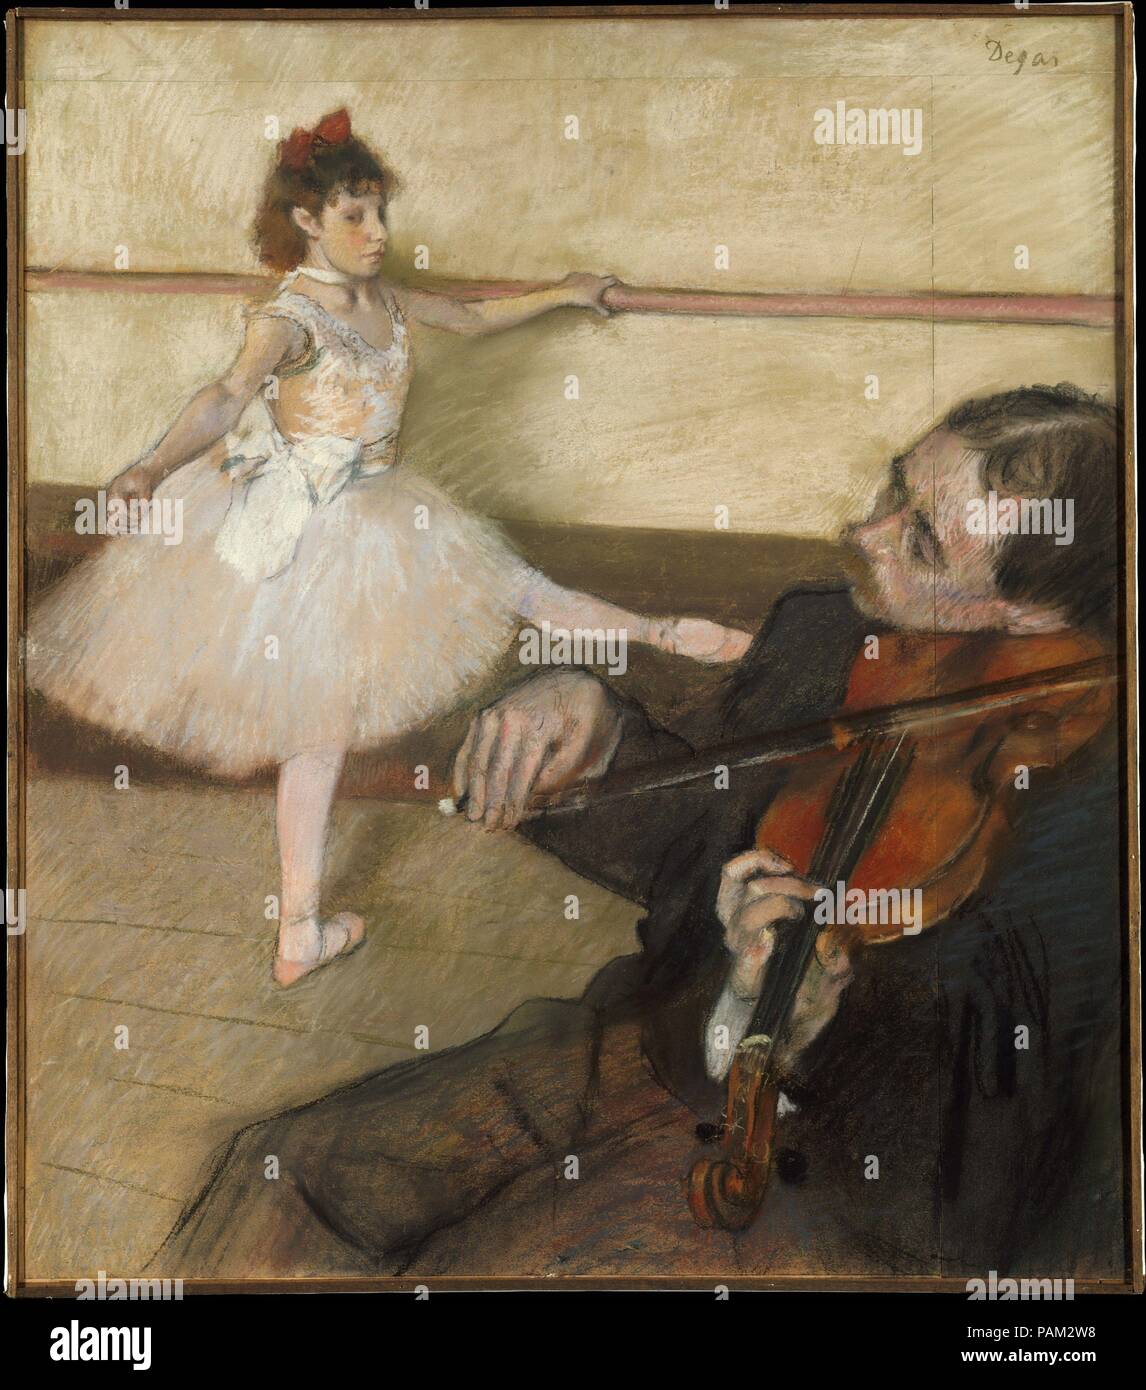 La lezione di ballo. Artista: Edgar Degas (francese, Parigi Parigi 1834-1917). Dimensioni: 25 3/8 x 22 1/8 in. (64,5 x 56,2 cm). Data: ca. 1879. Degas realizzato varie regolazioni per questa composizione, presumibilmente per ospitare il violinista nel suo design definitivo. Egli ha aggiunto strisce di carta in alto e a destra, e non vi è evidenza per suggerire che egli potrebbe avere alterato il ballerino posa. Un pastello studio per il musicista è nella collezione del museo (19,51.1). Il presente lavoro è stato precedentemente di proprietà di Gustave Caillebotte, che probabilmente acquistato da o al più presto dopo la mostra impressionista del 1879. In 18 Foto Stock